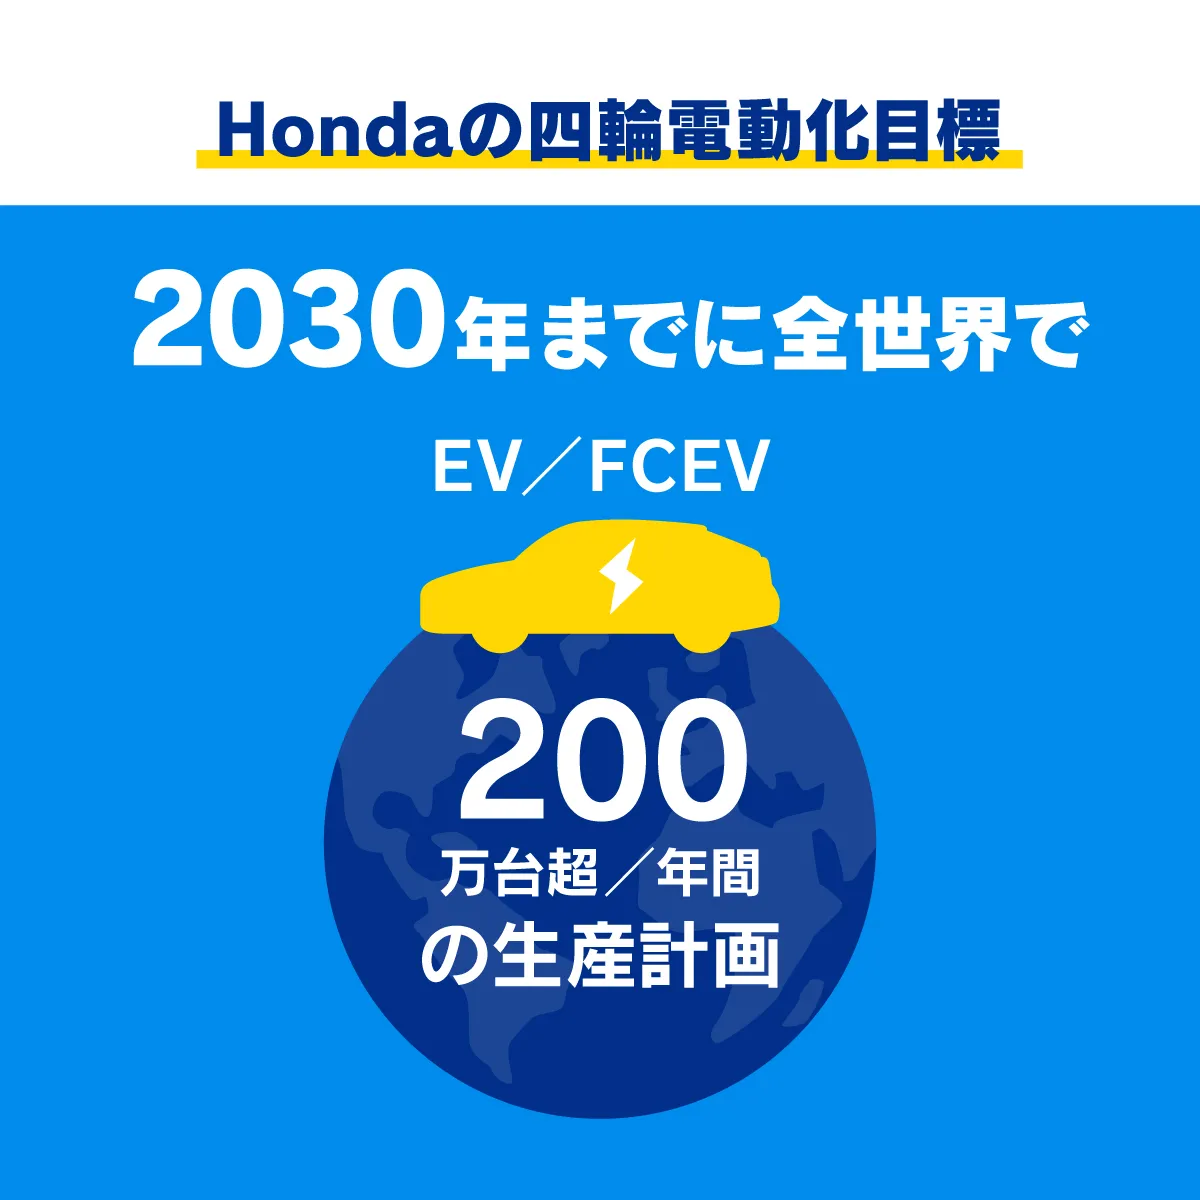 Hondaは2030年までに、全世界で年間200万台超のEV/FCVの生産を目指す